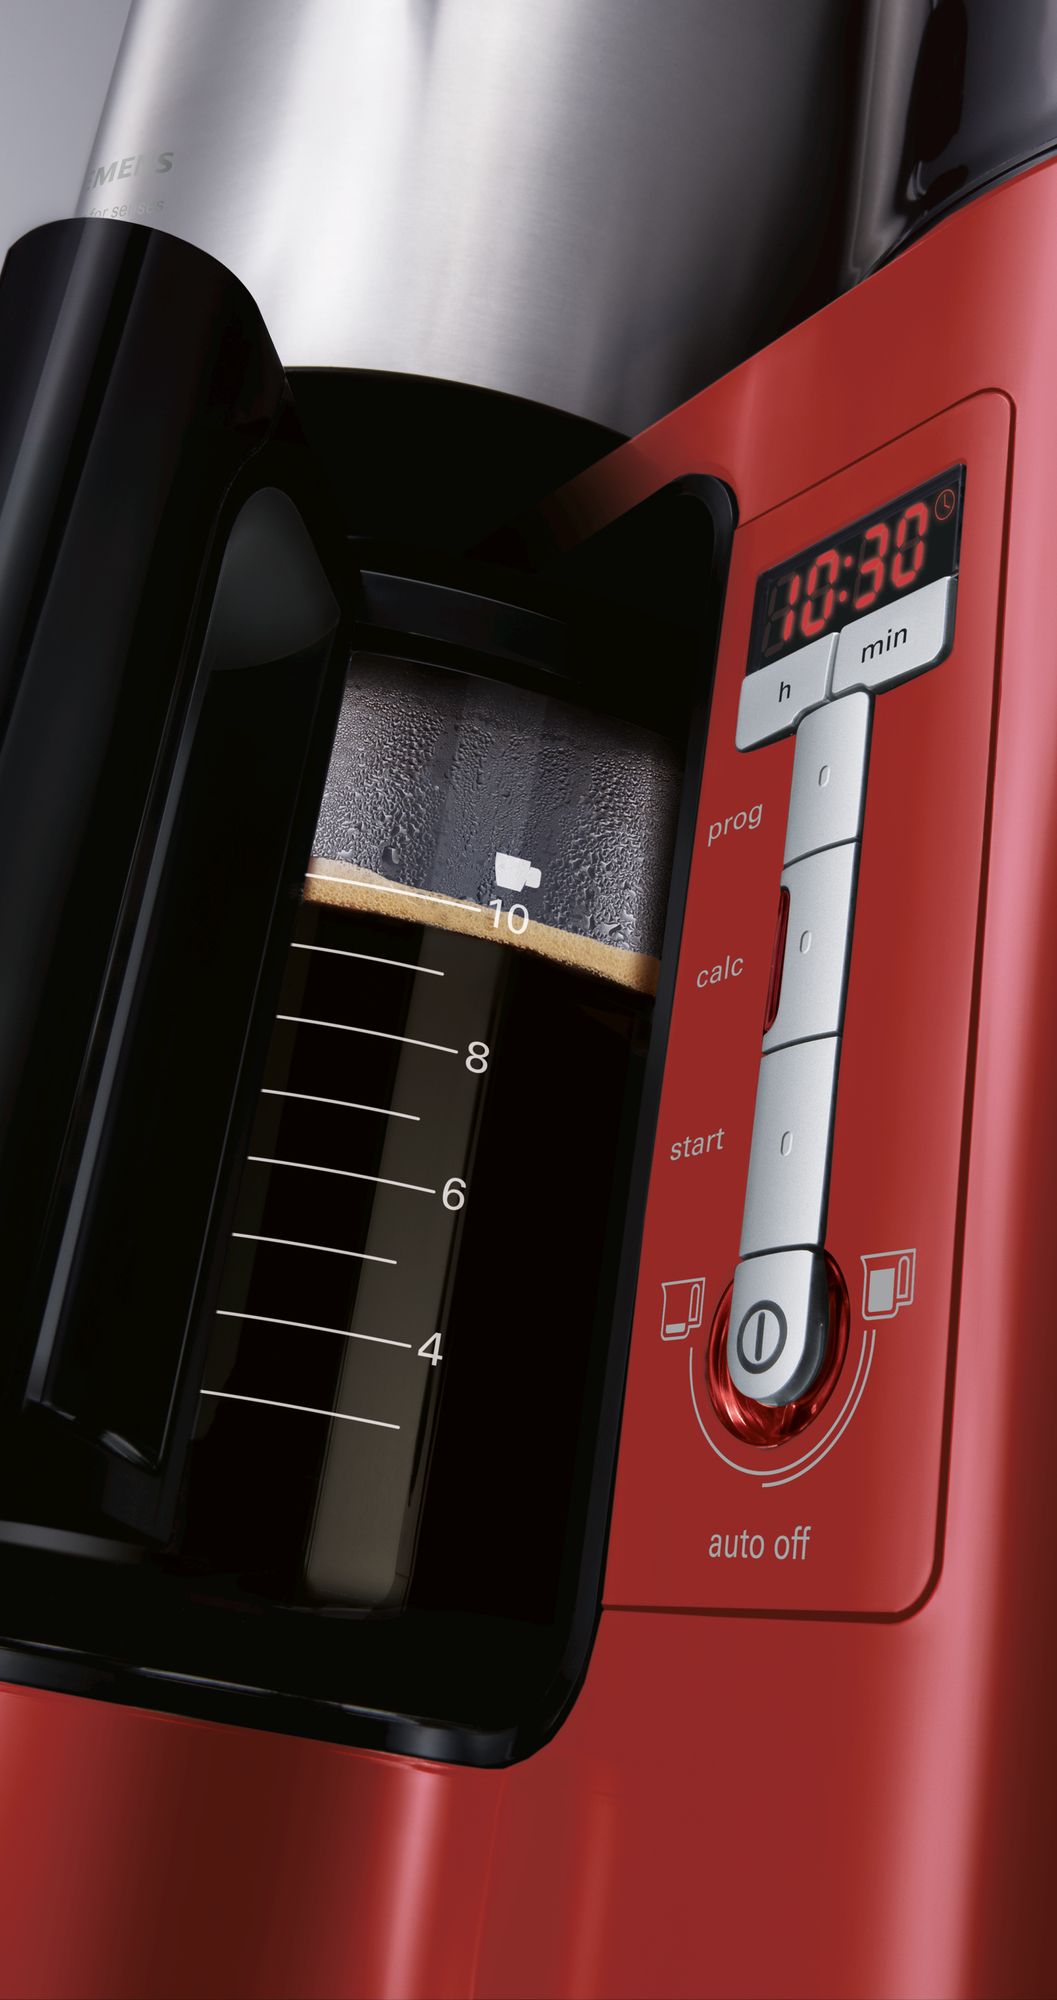 Filtre Kahve Makinesi sensor for senses kırmızı